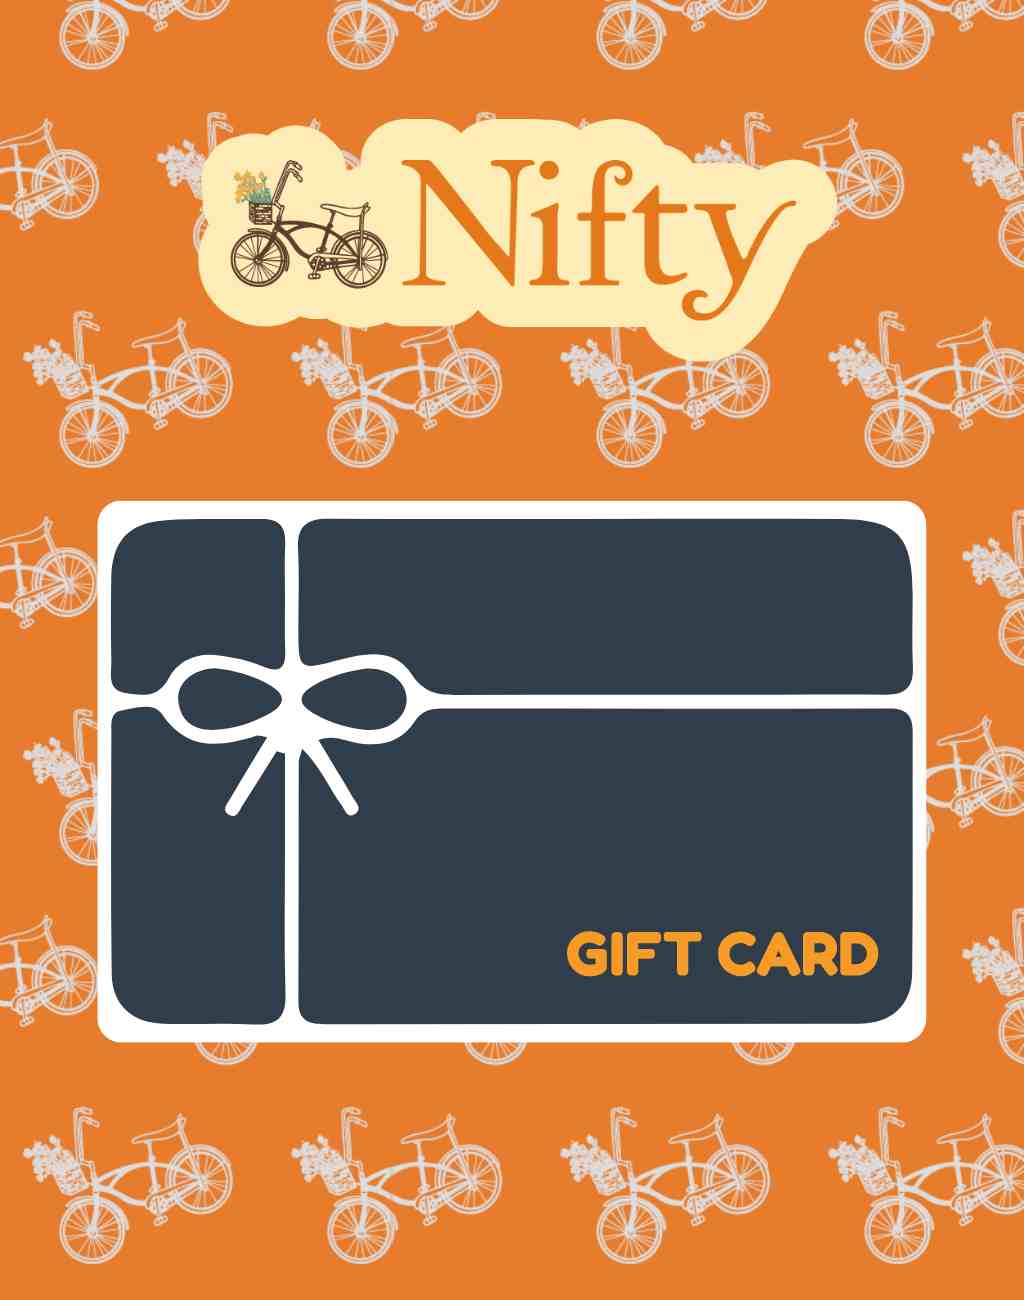 Nifty Gift Card - Visit Nifty Nifty 